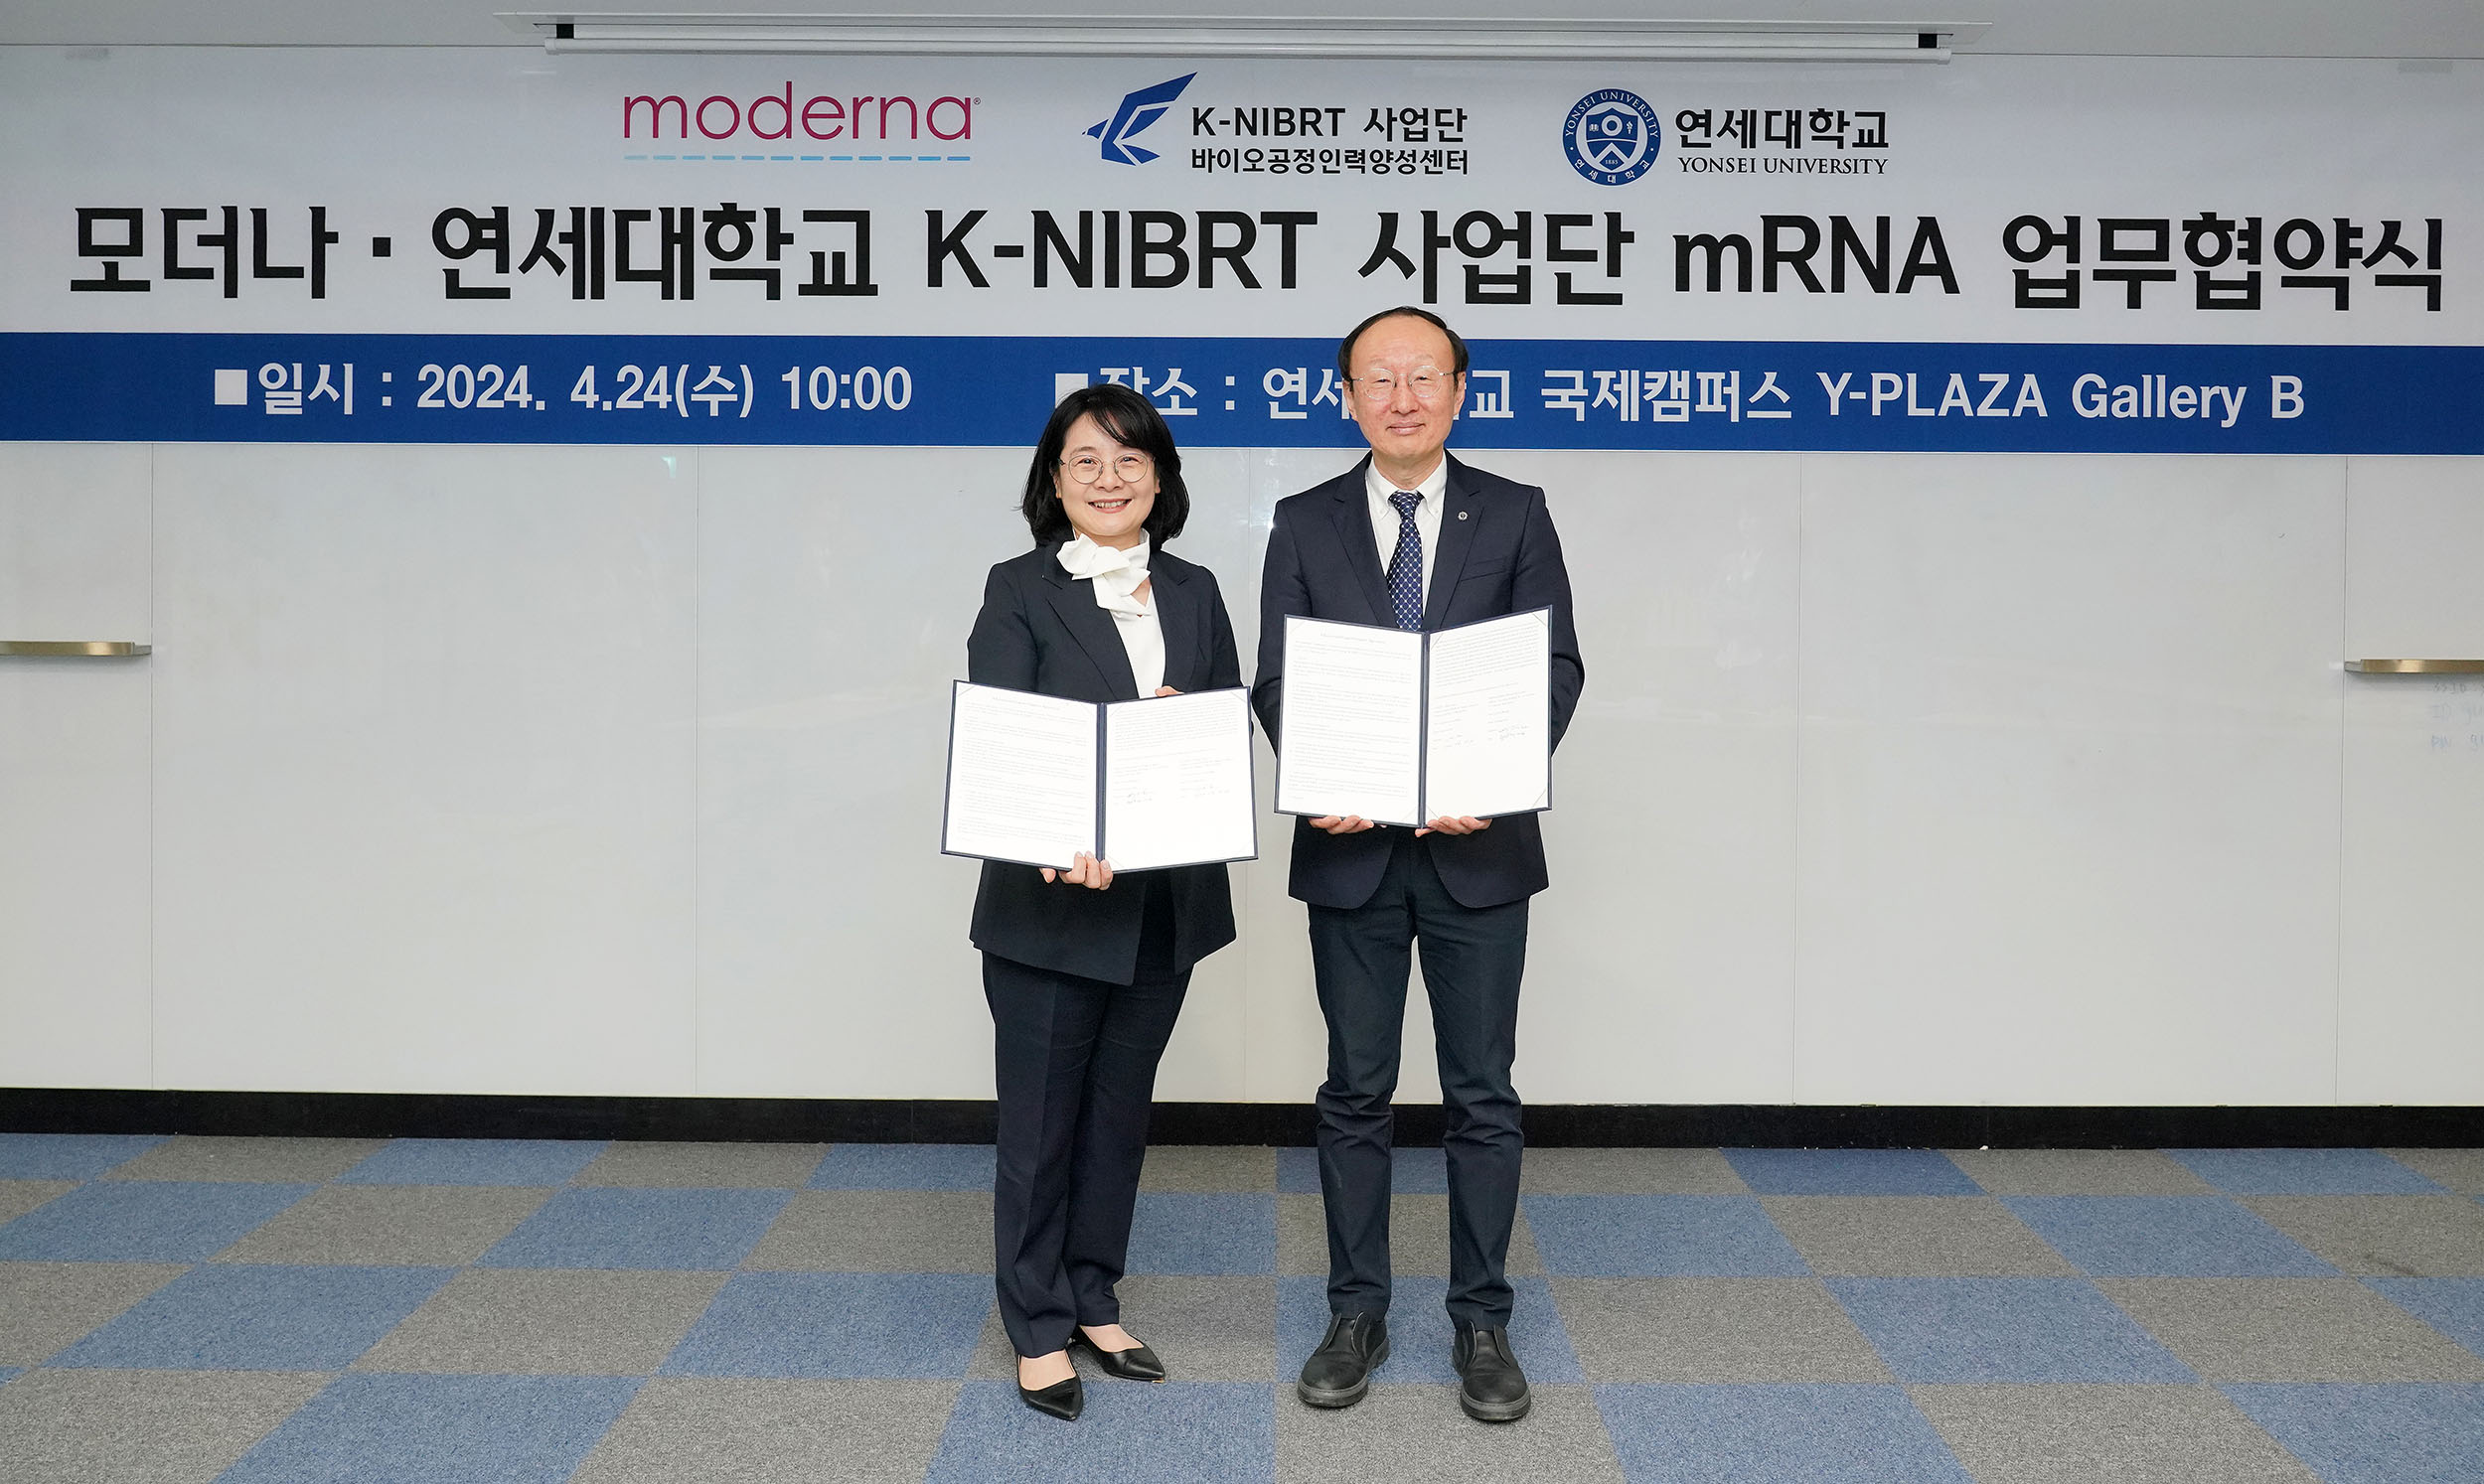 [2024. 4. 25.] 연세대 K-NIBRT사업단, 모더나와 mRNA 교육 콘텐츠 및 프로그램 개발을 위한 협약 체결